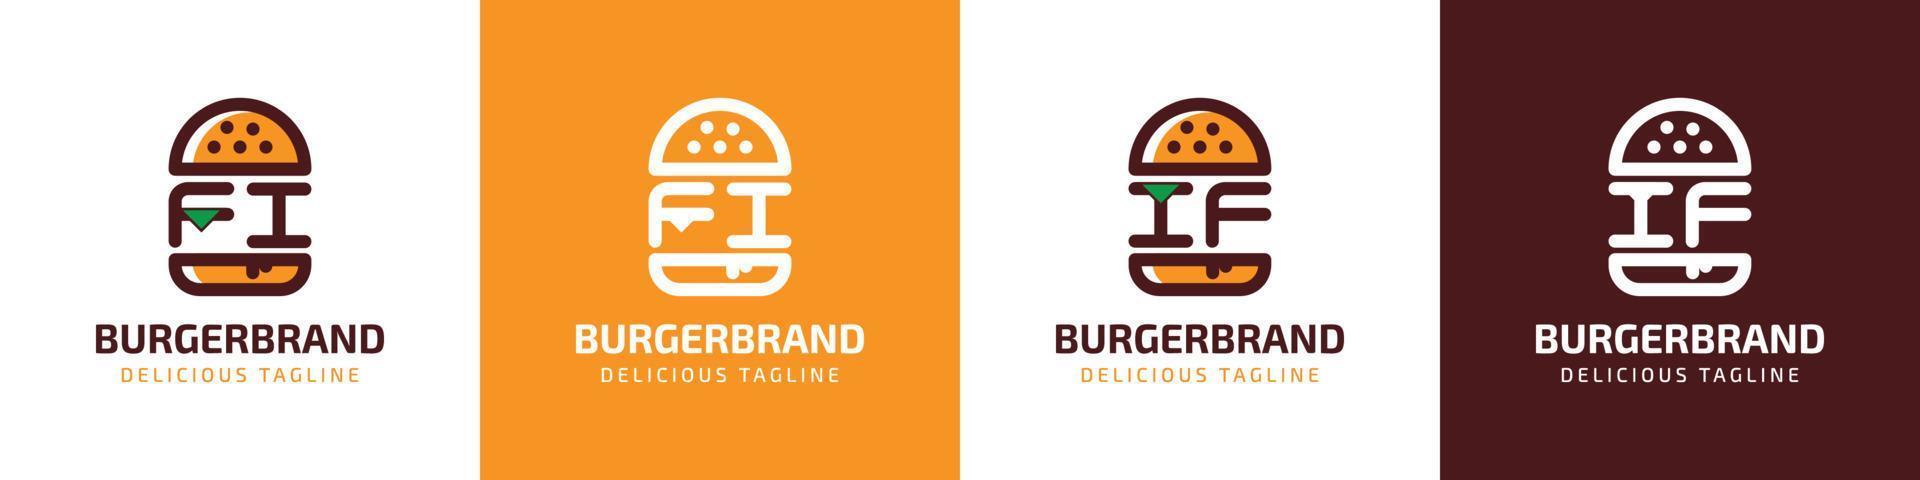 carta fi e E se hamburguer logotipo, adequado para qualquer o negócio relacionado para hamburguer com fi ou E se iniciais. vetor